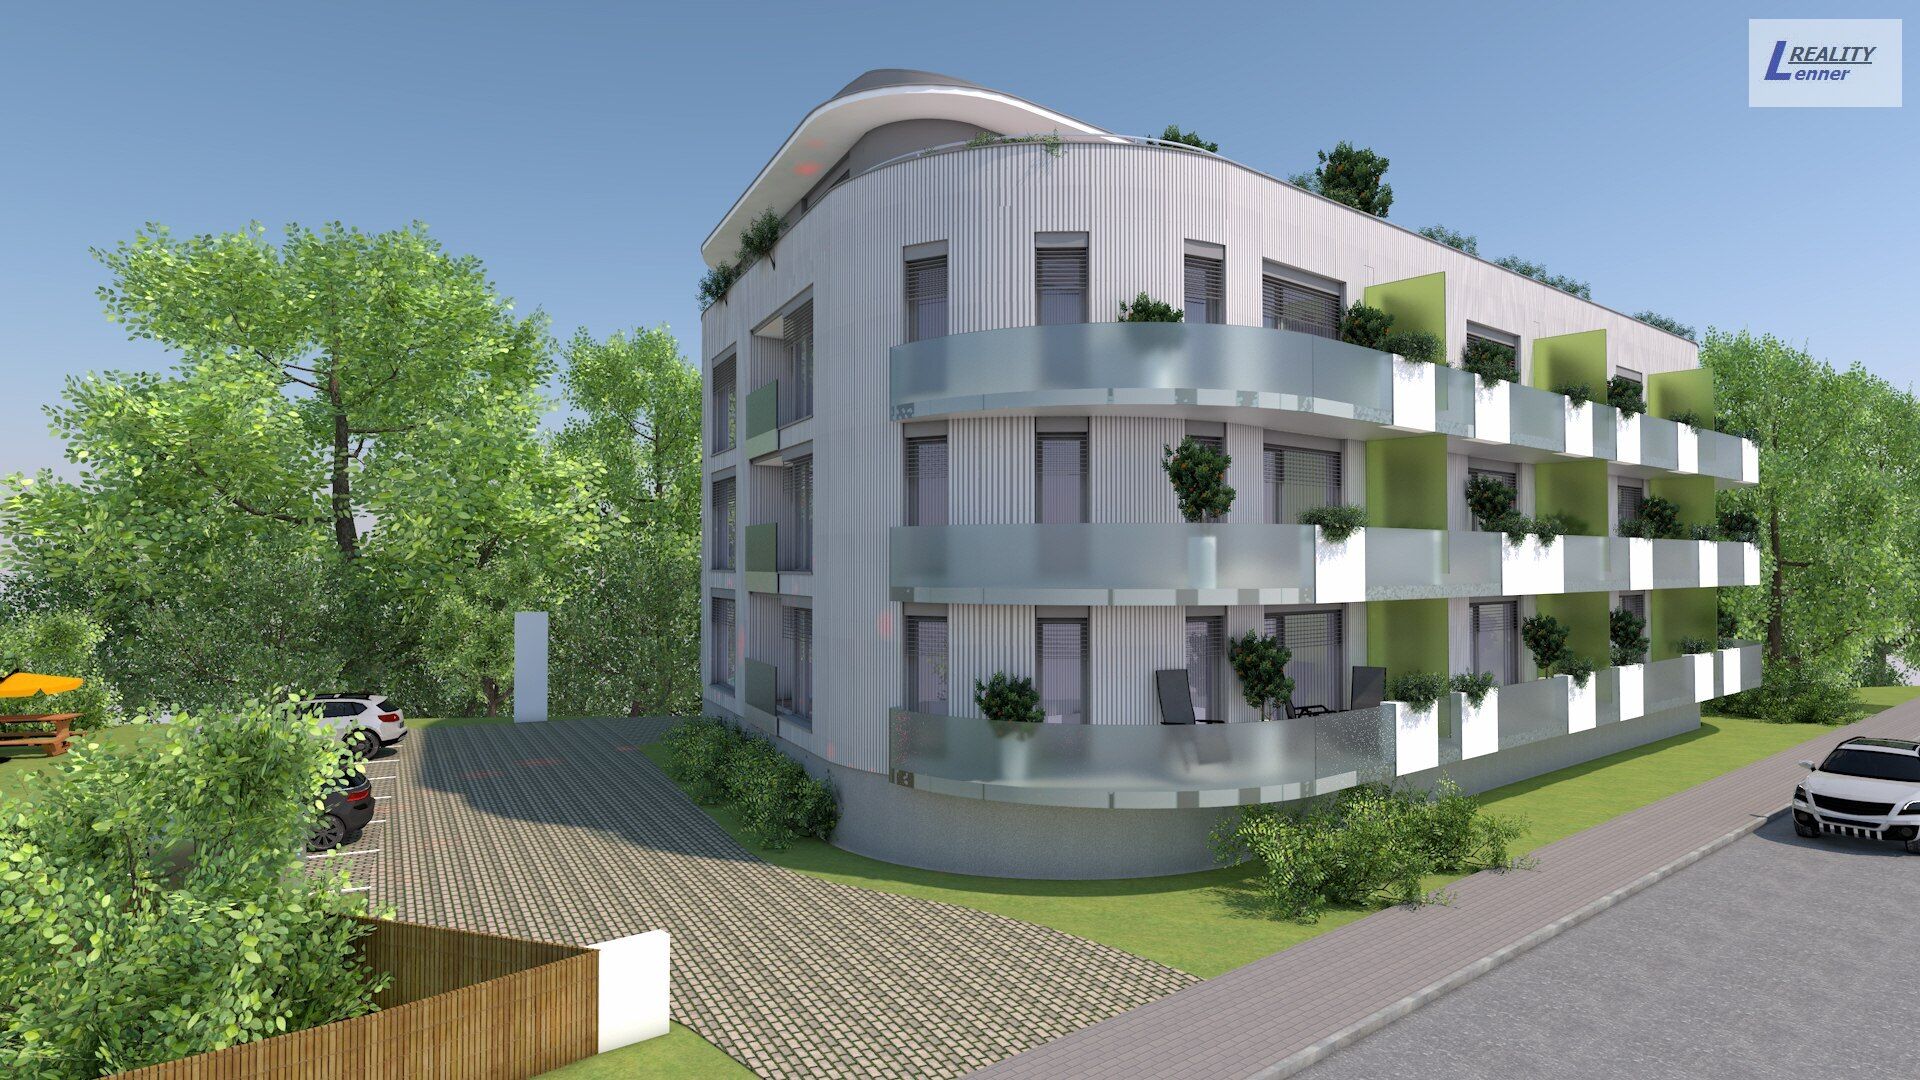 Novostavba bytu 3+kk/ balkon 17 m2, gar. stání, sklep, 85 m2